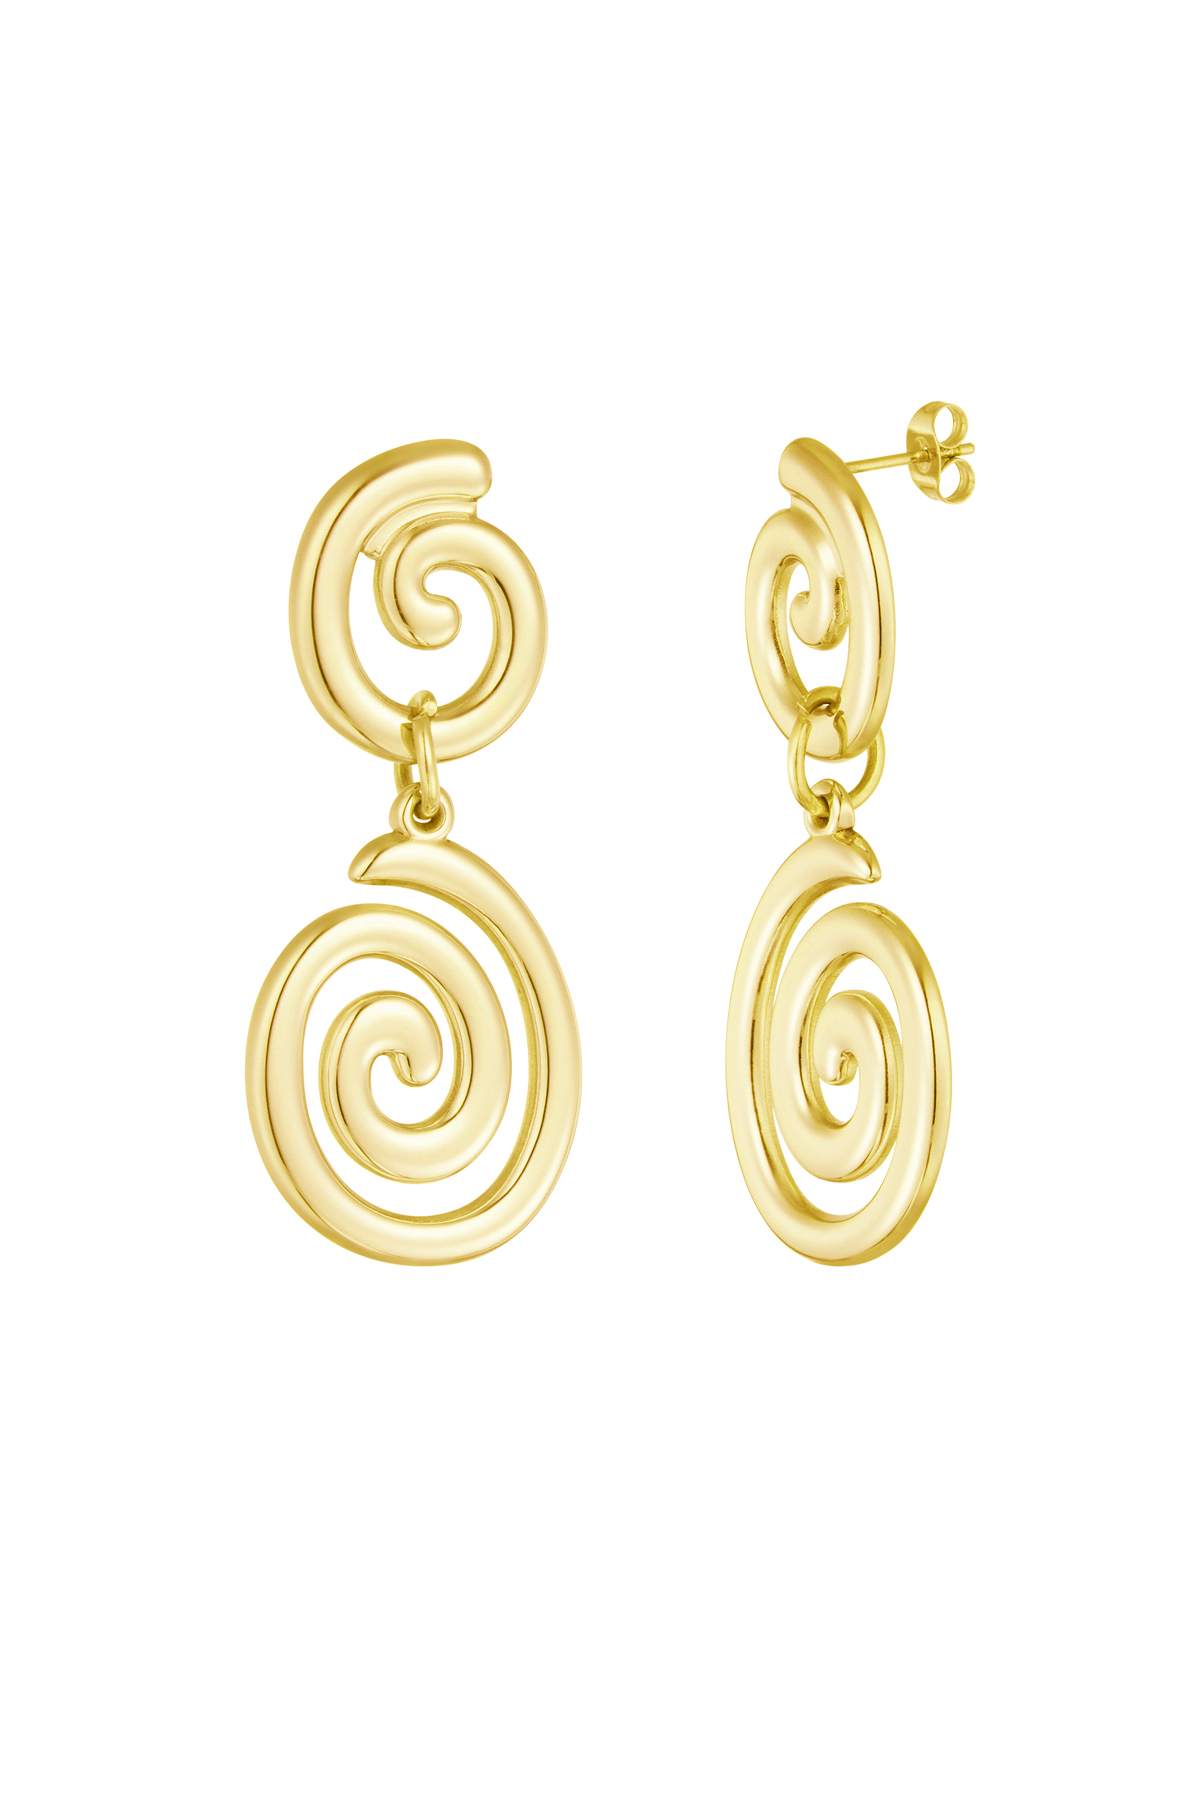 Earrings swirly wave - gold